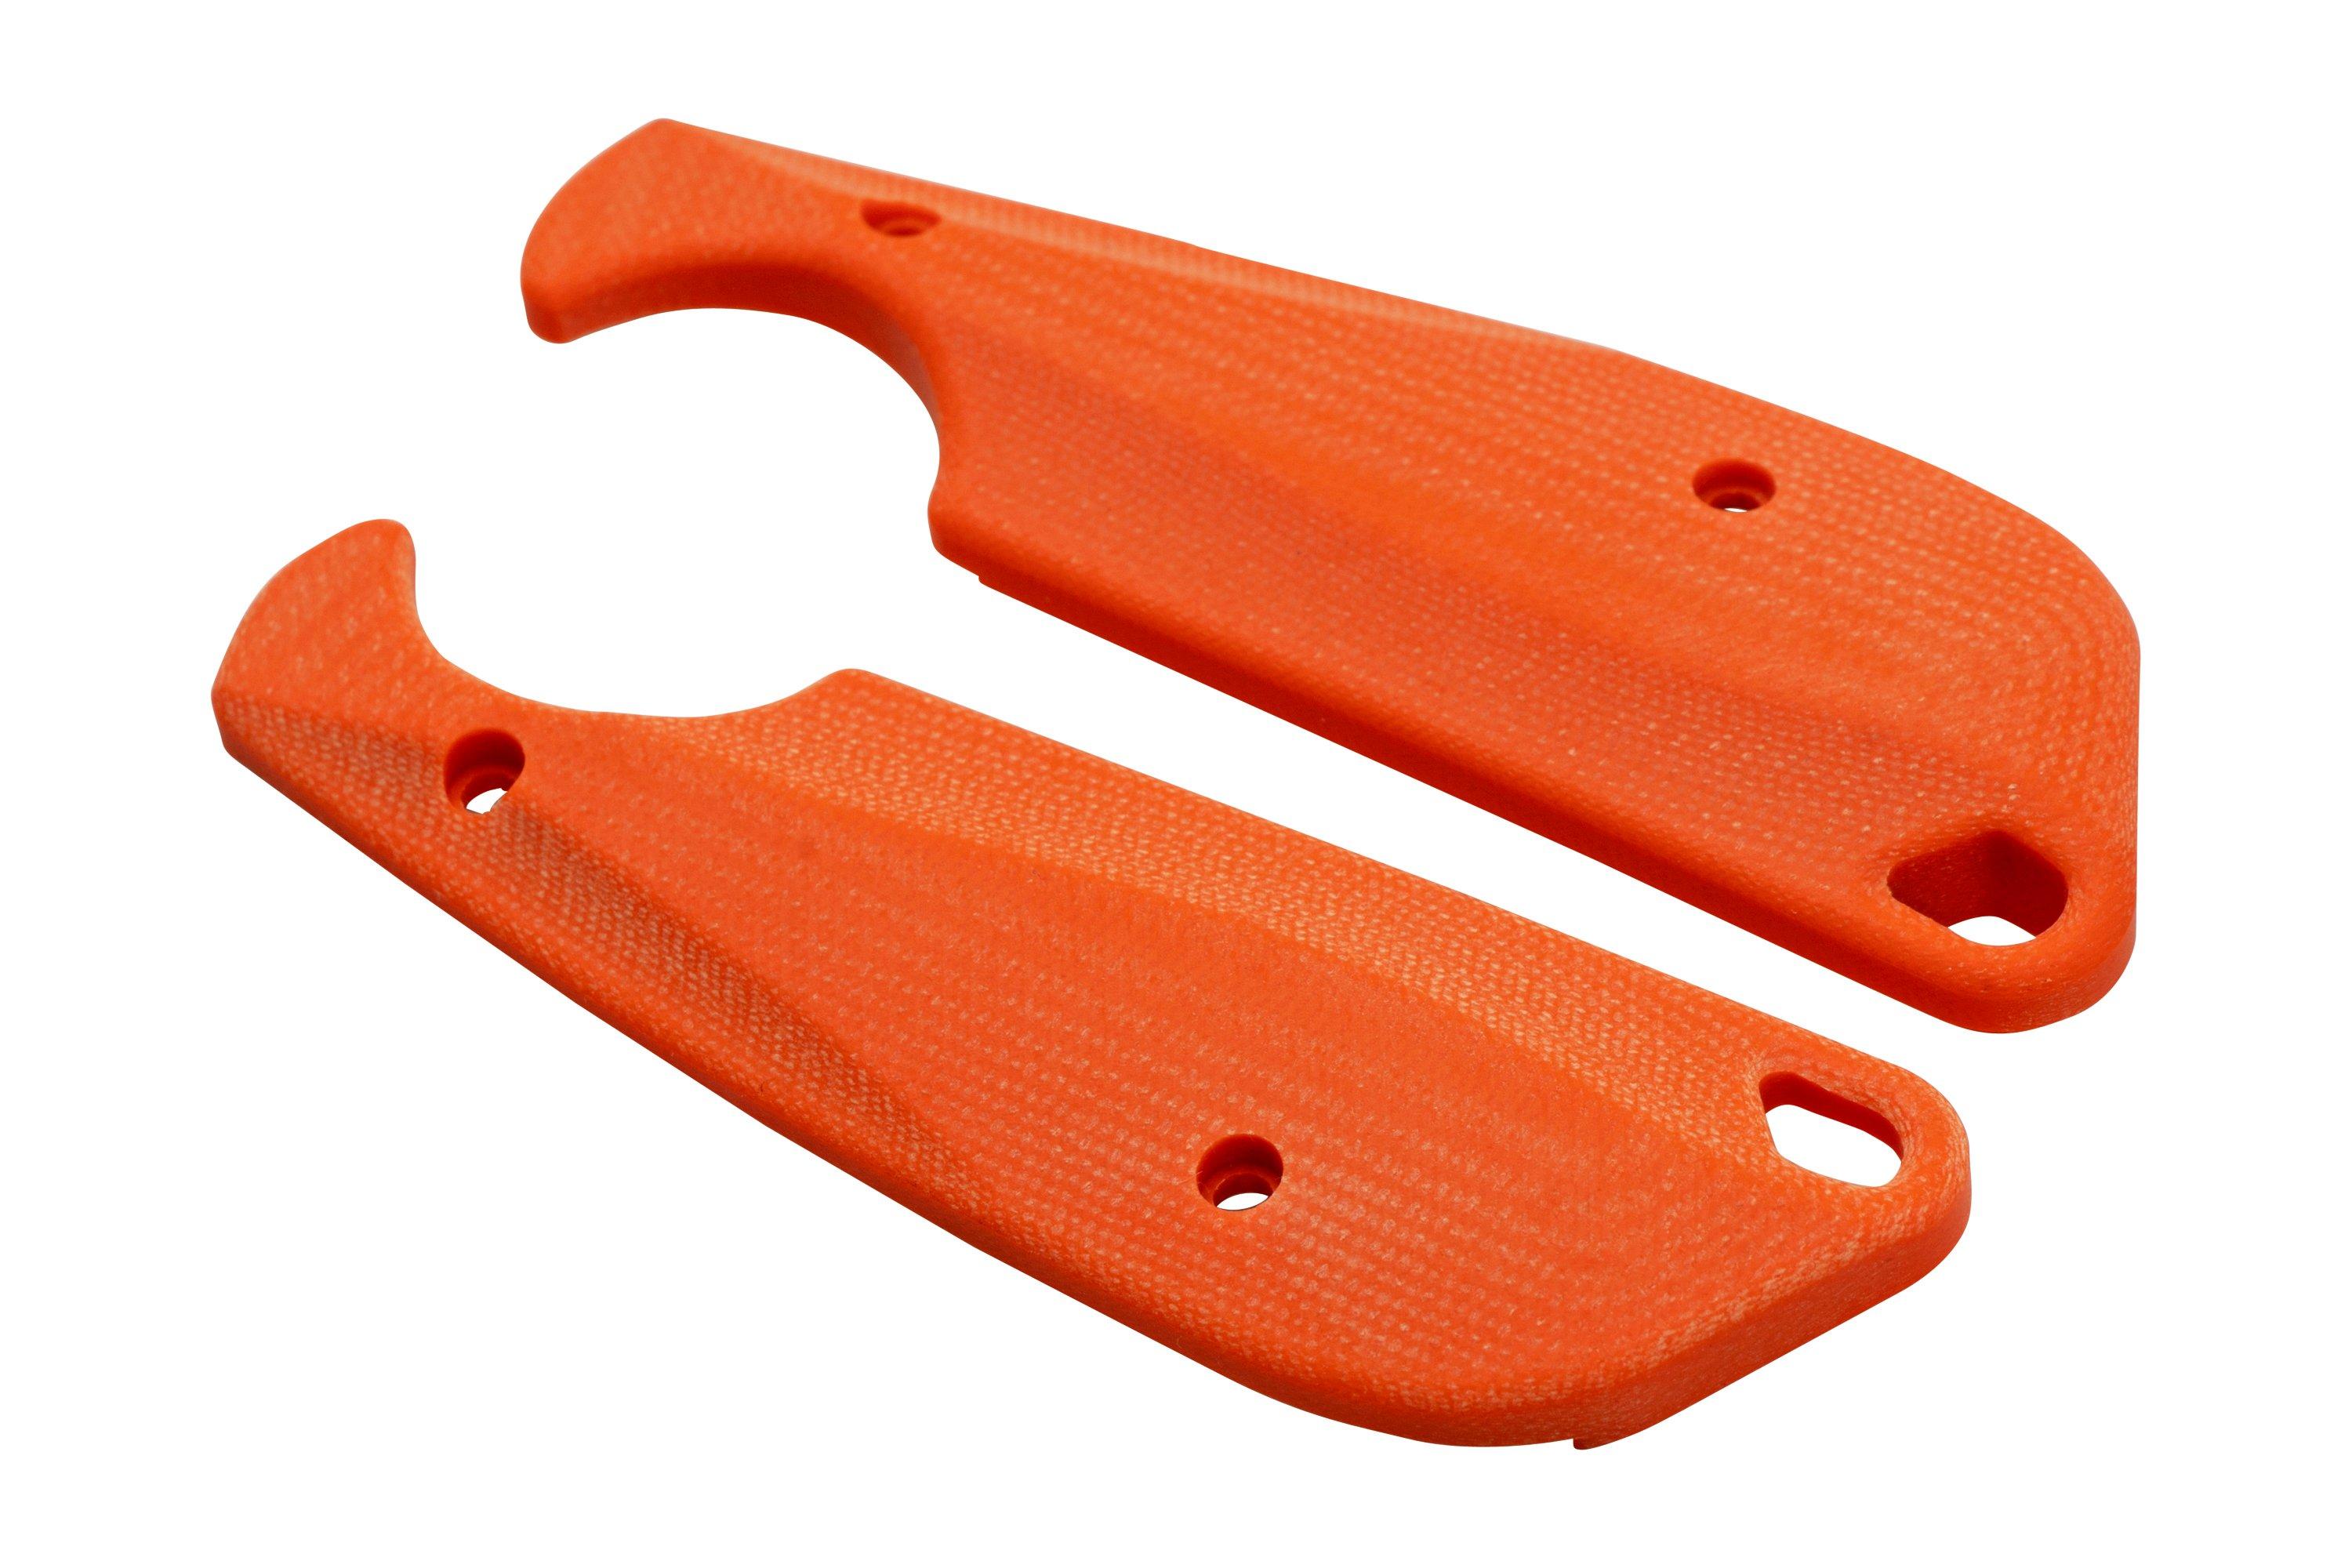 flytanium-crkt-minimalist-flex-fly-1099-orange-g10-scales-voordelig